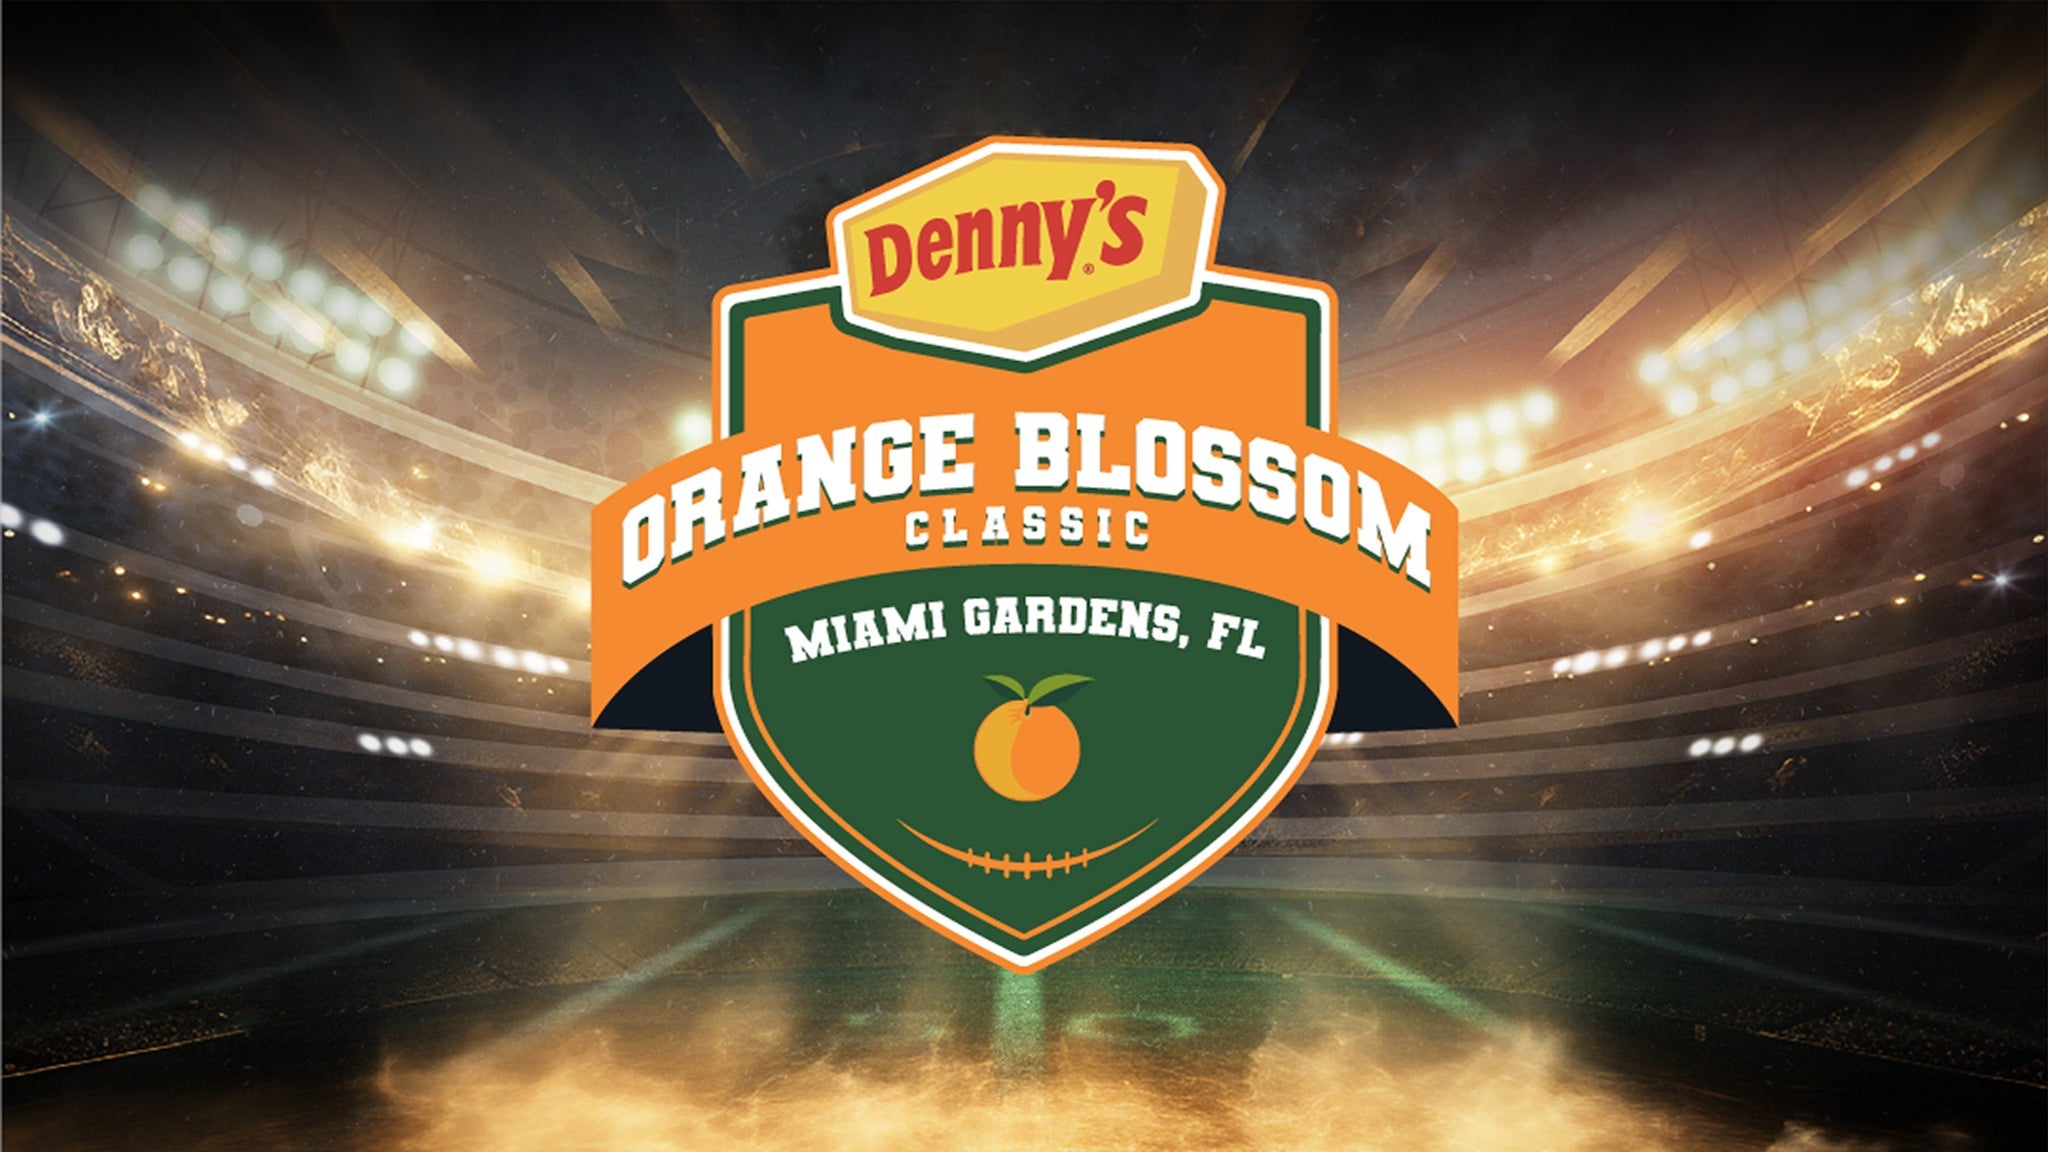 Denny's Orange Blossom Classic